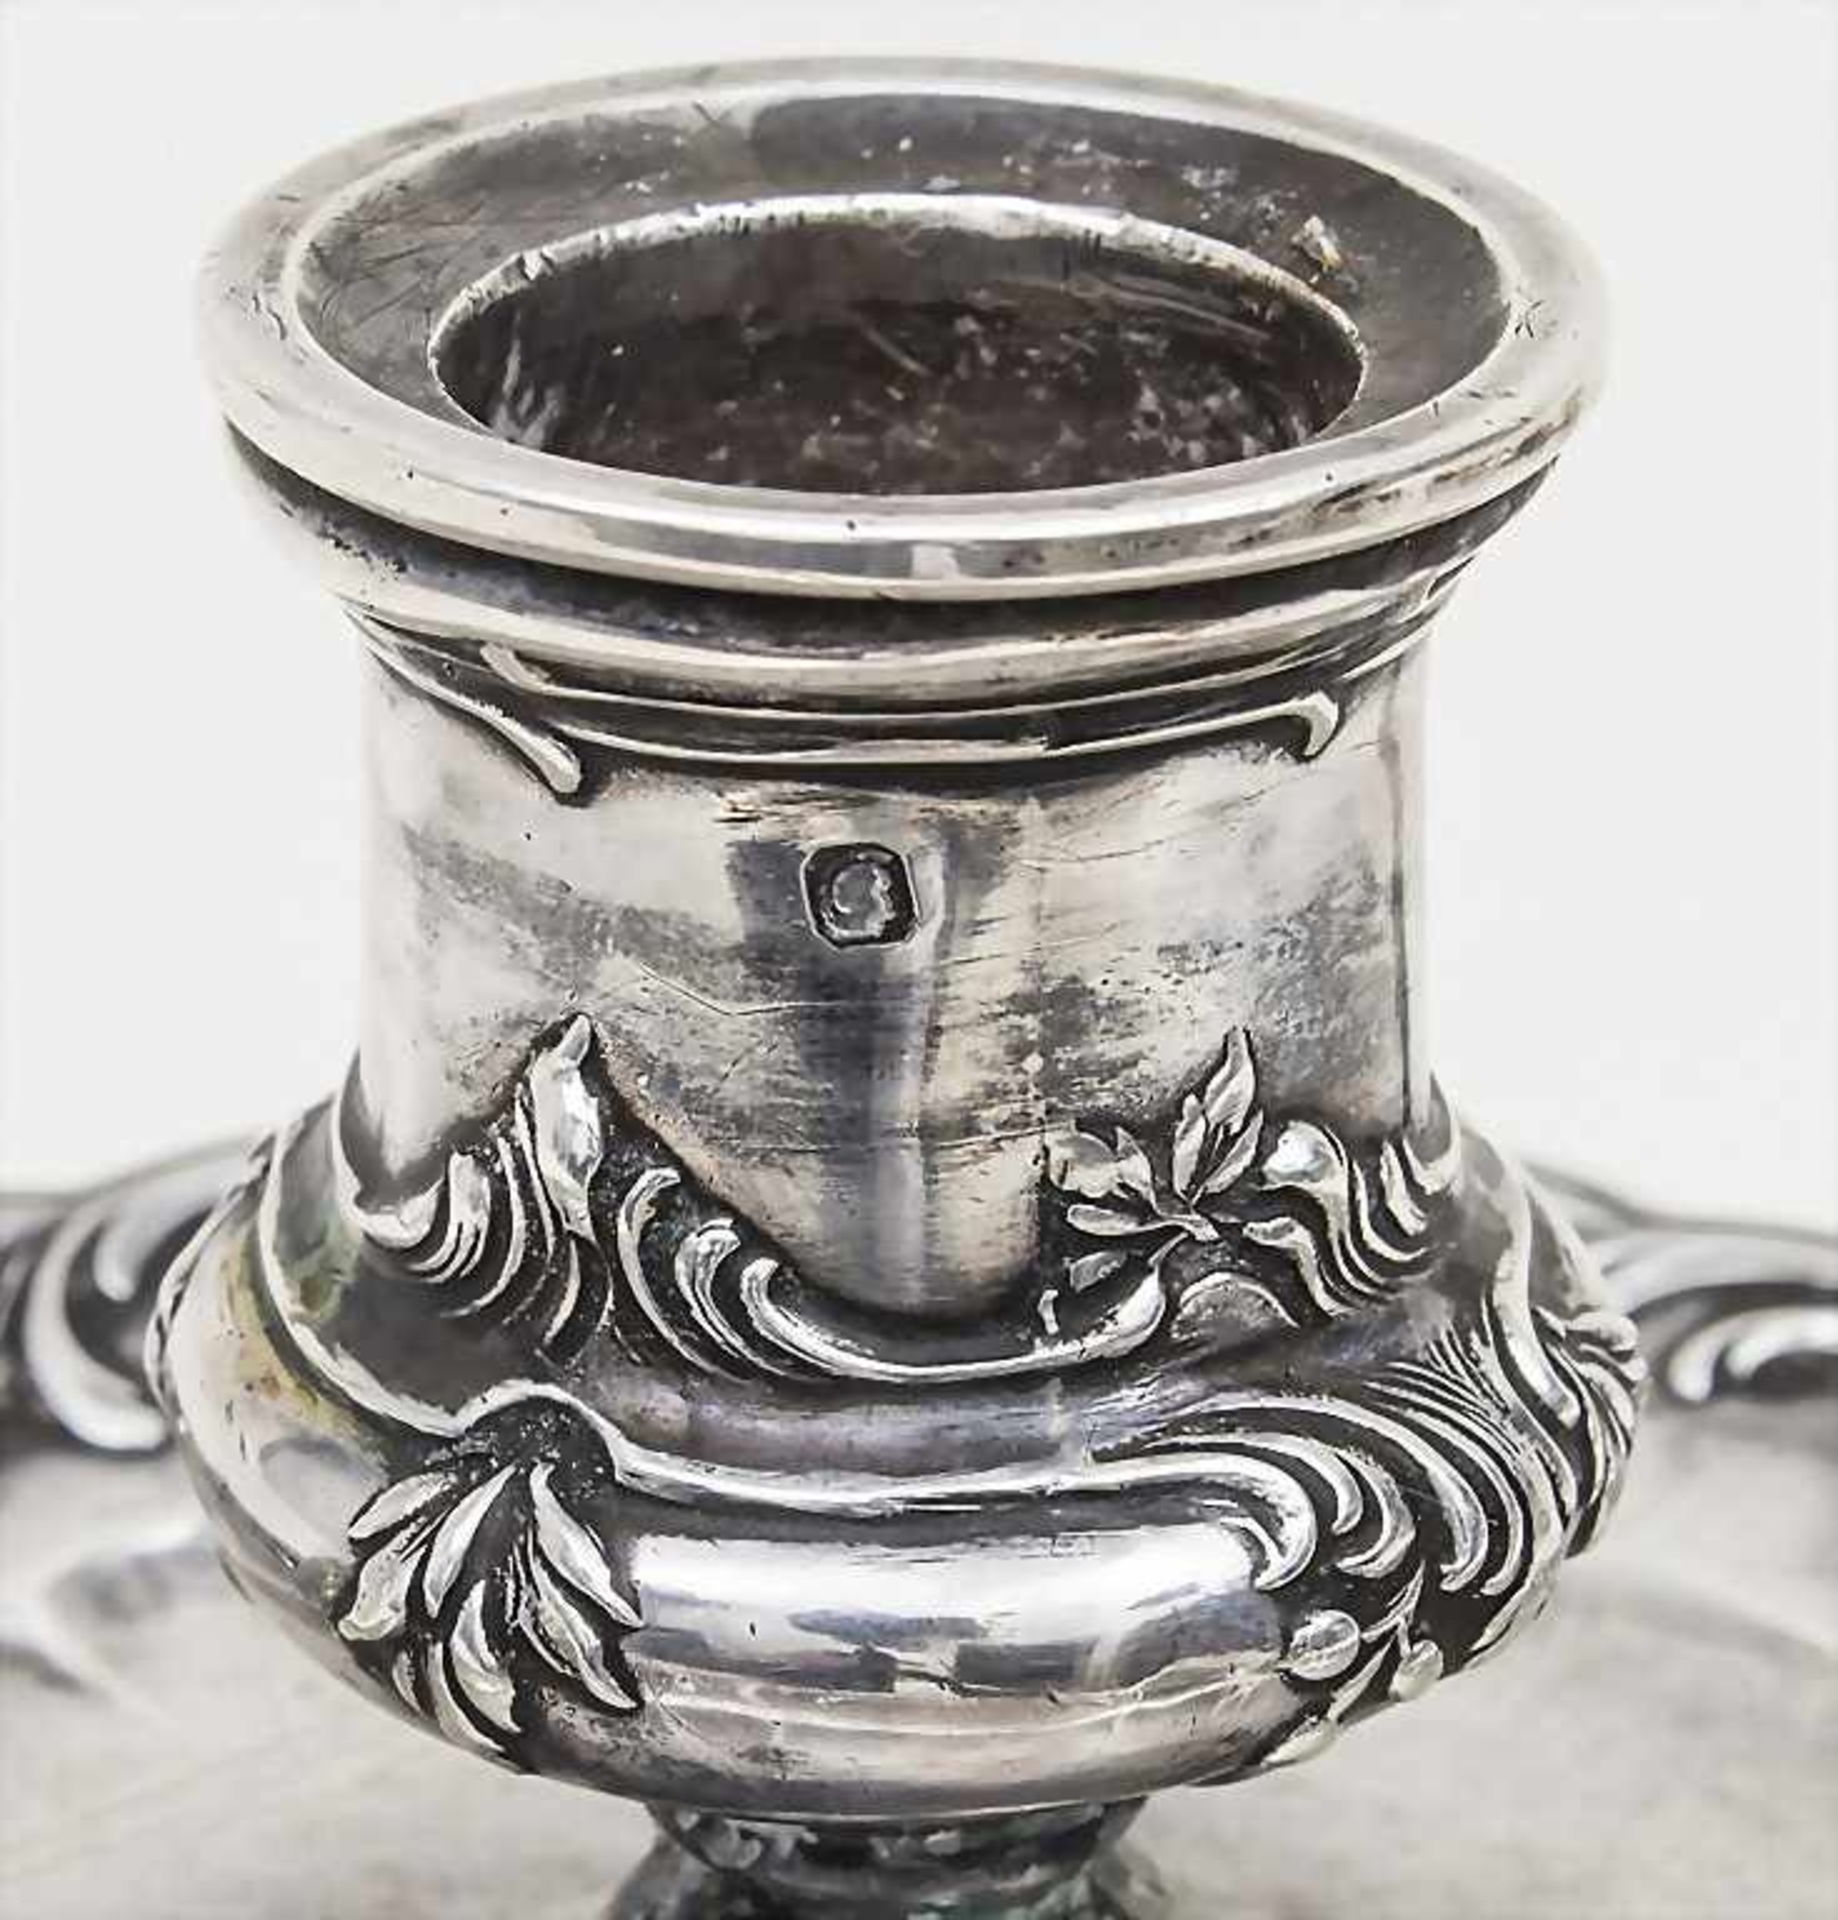 Handleuchter / A portable candlestick, Edmond Tetard, Paris, 1880-1903Material: 950 Silber, - Bild 2 aus 3